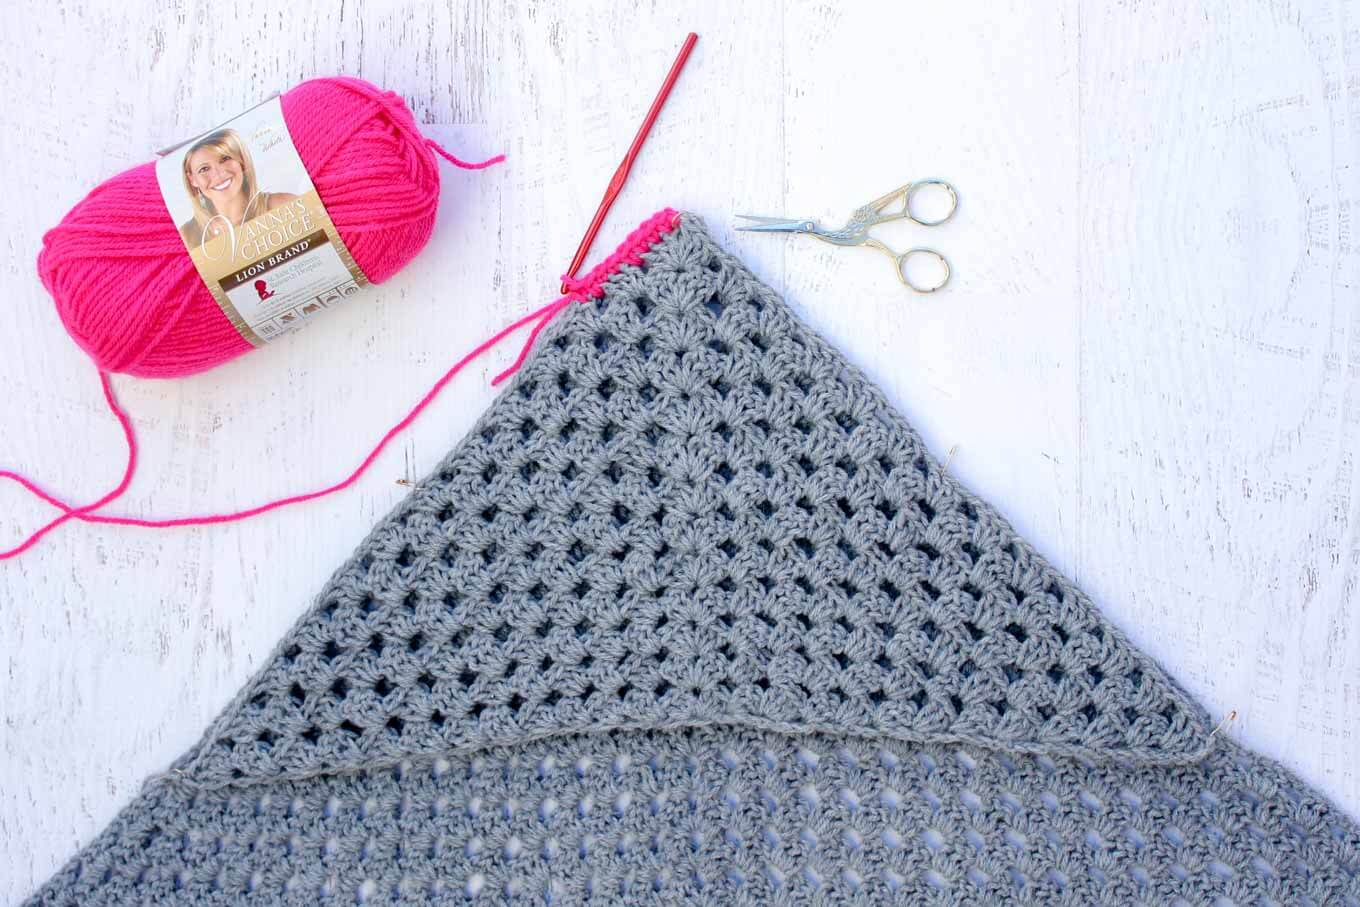 Beginner Crochet Projects Baby Blankets Modern Crochet Hooded Ba Blanket Free Pattern For Charity